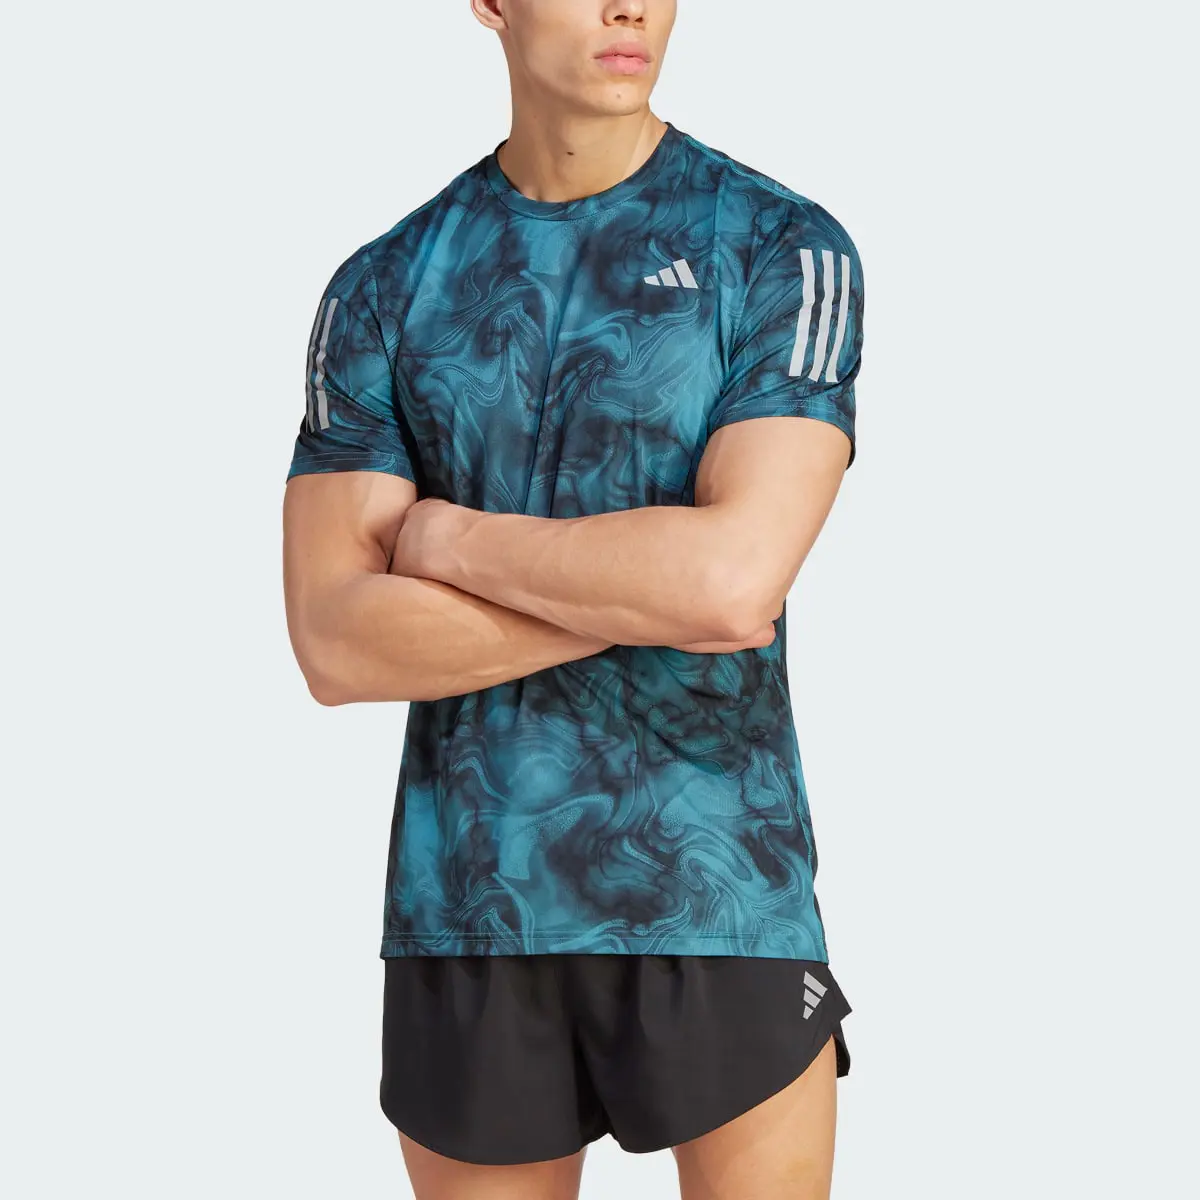 Adidas Own the Run Allover Print T-Shirt. 1